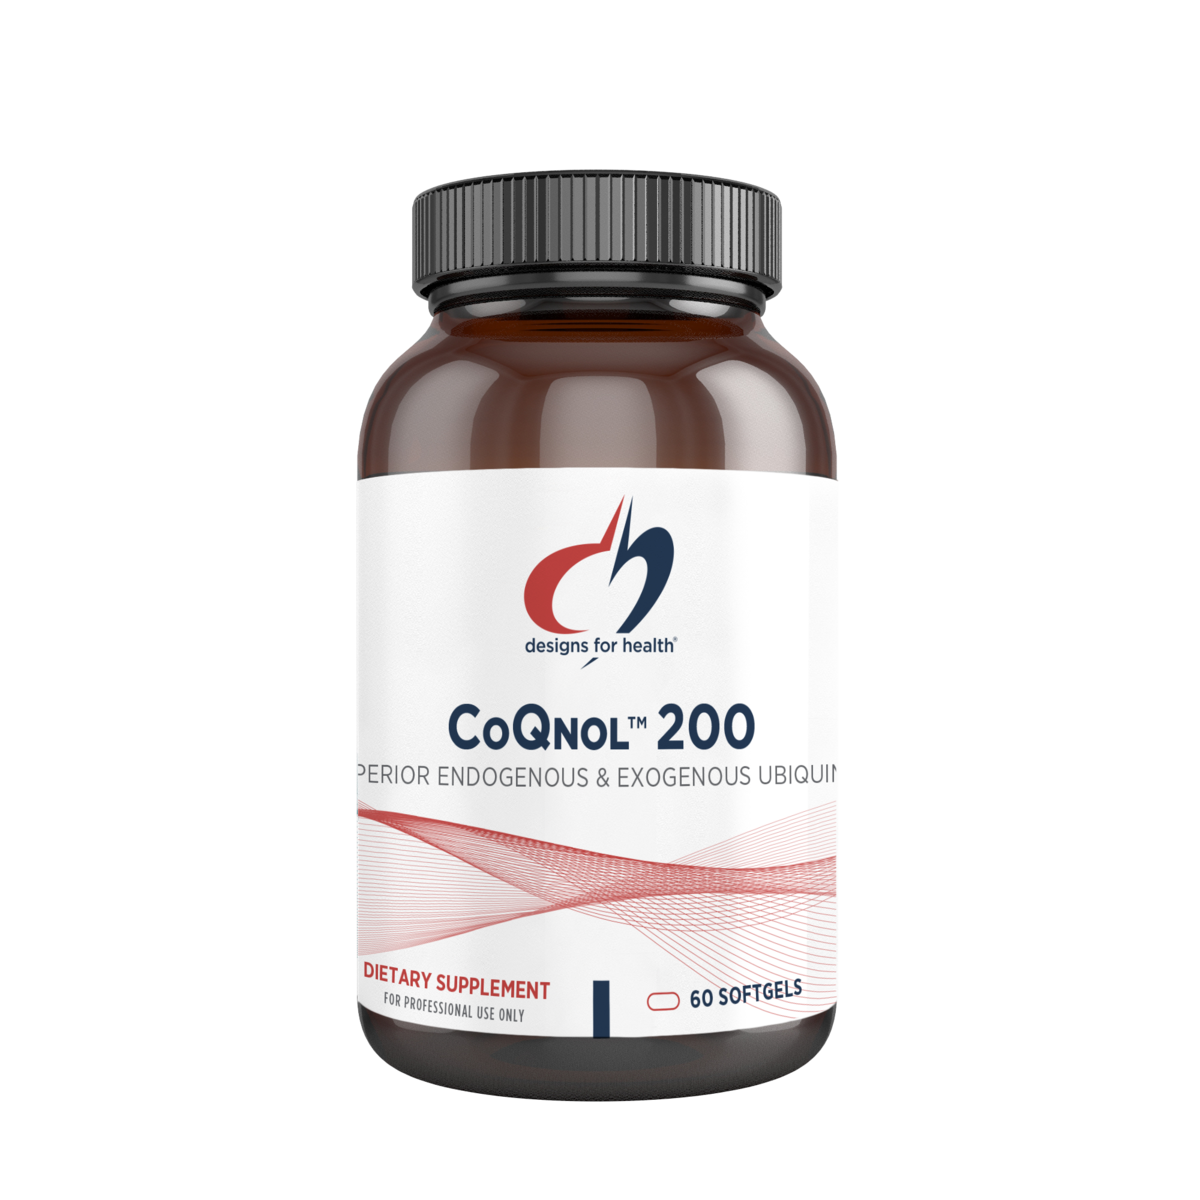 CoQnol 200